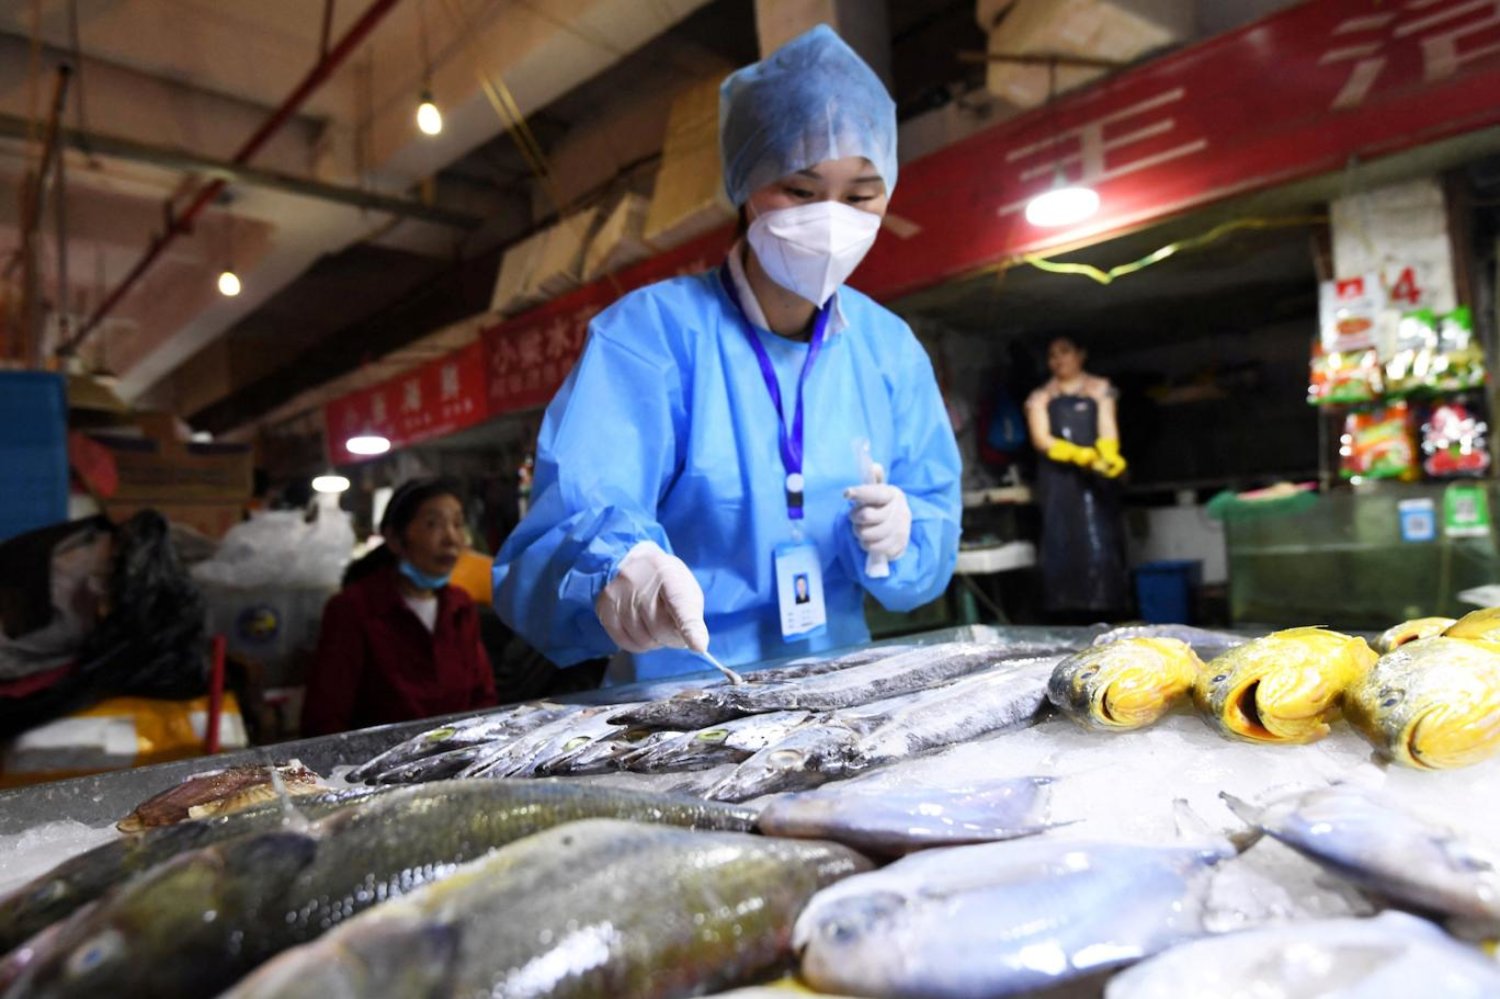 Balıklara test yapılması sosyal medyada yankı uyandırdı (Reuters/Arşiv)

